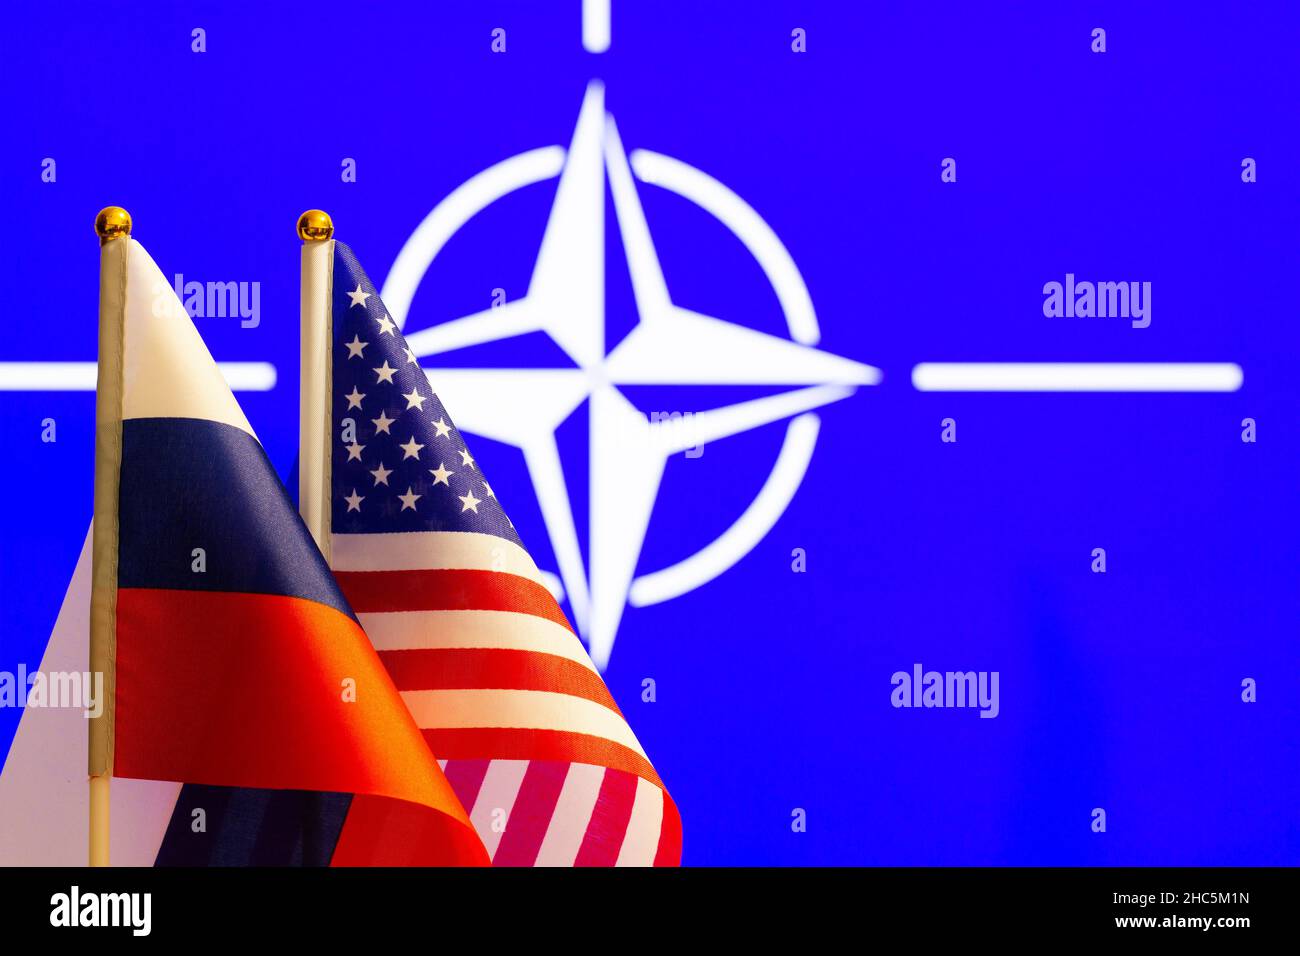 Die US-Flagge, die russische Flagge und die NATO-Flagge mit Platz für Text. Flagge der USA, Flagge Russlands. Die Vereinigten Staaten von Amerika und die Russen Stockfoto